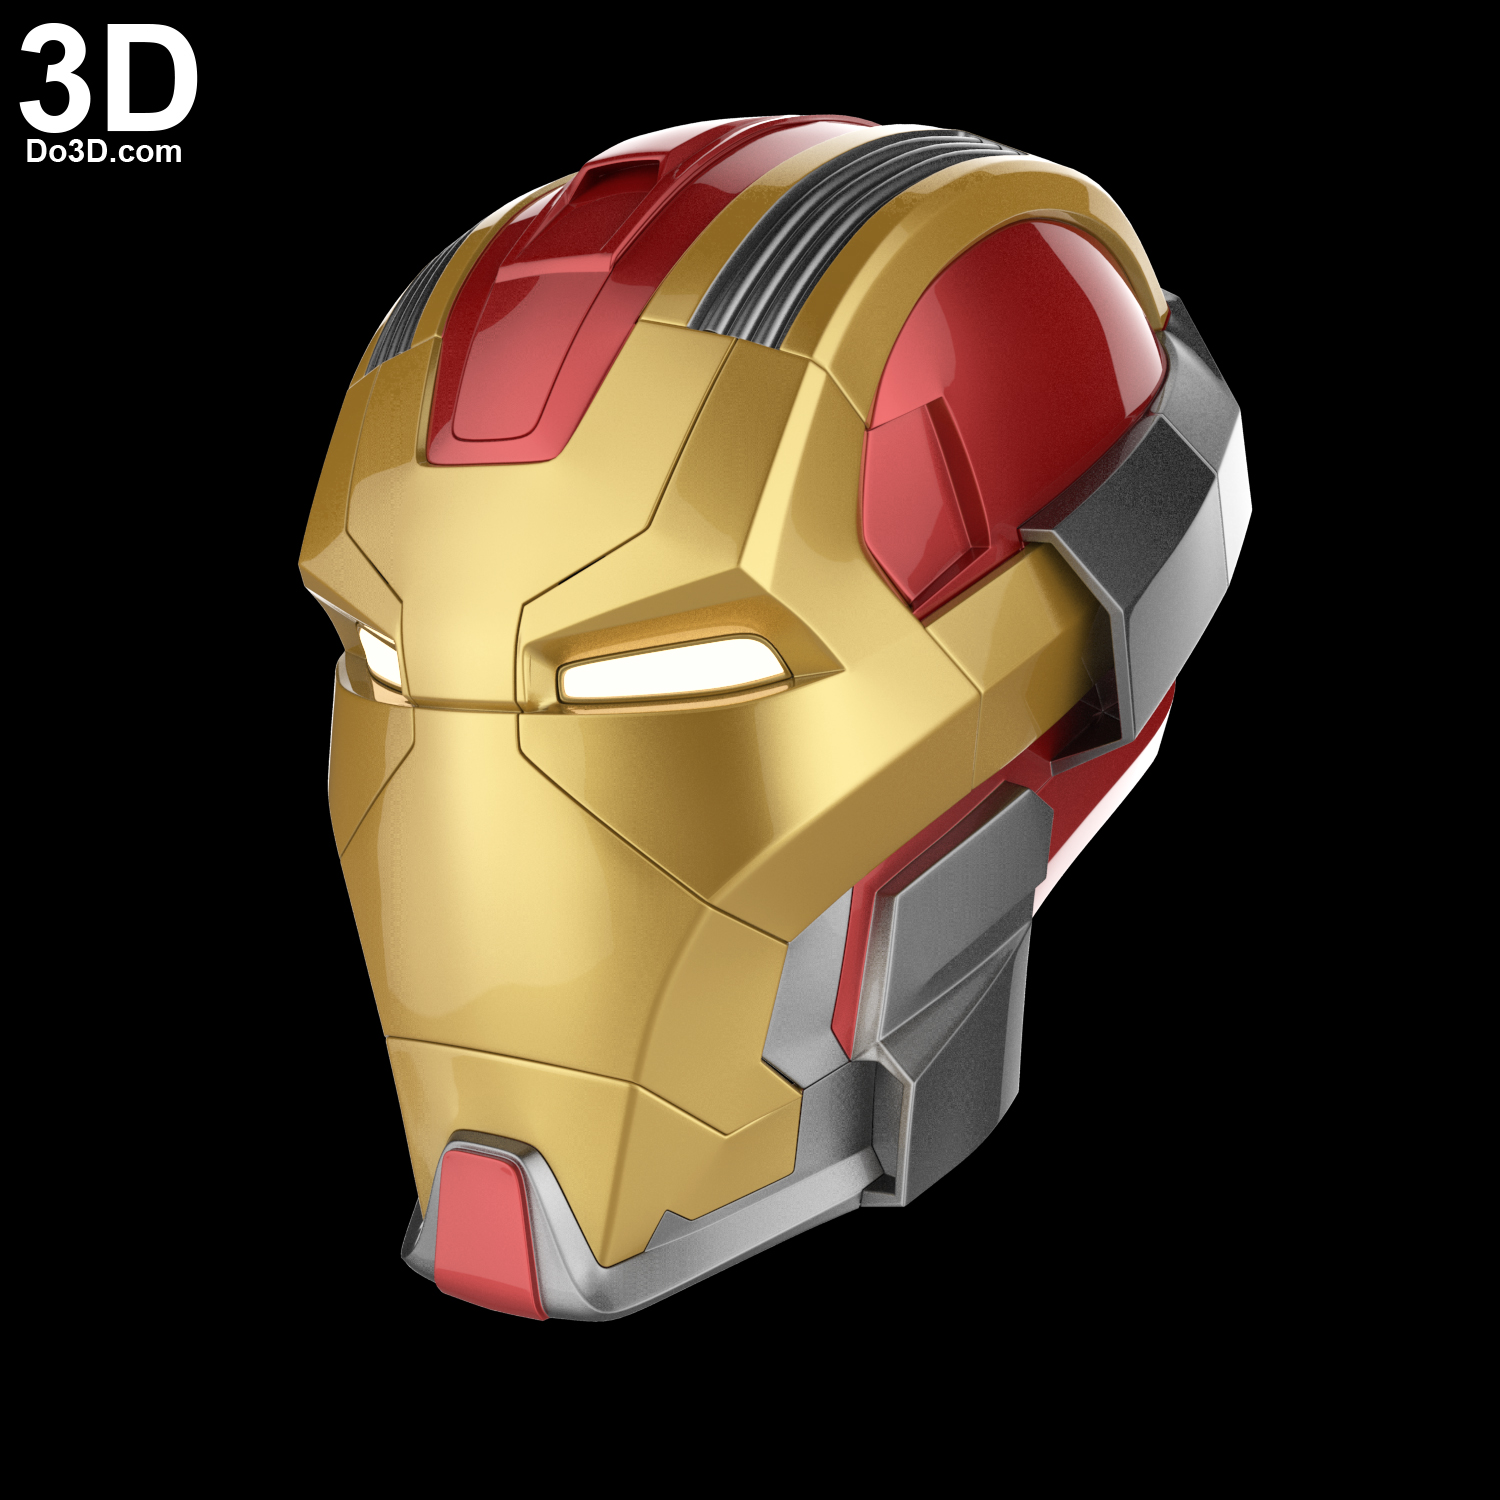 3D Printable Model: Iron Man Mark XVII HeartBreaker MK 17 Helmet